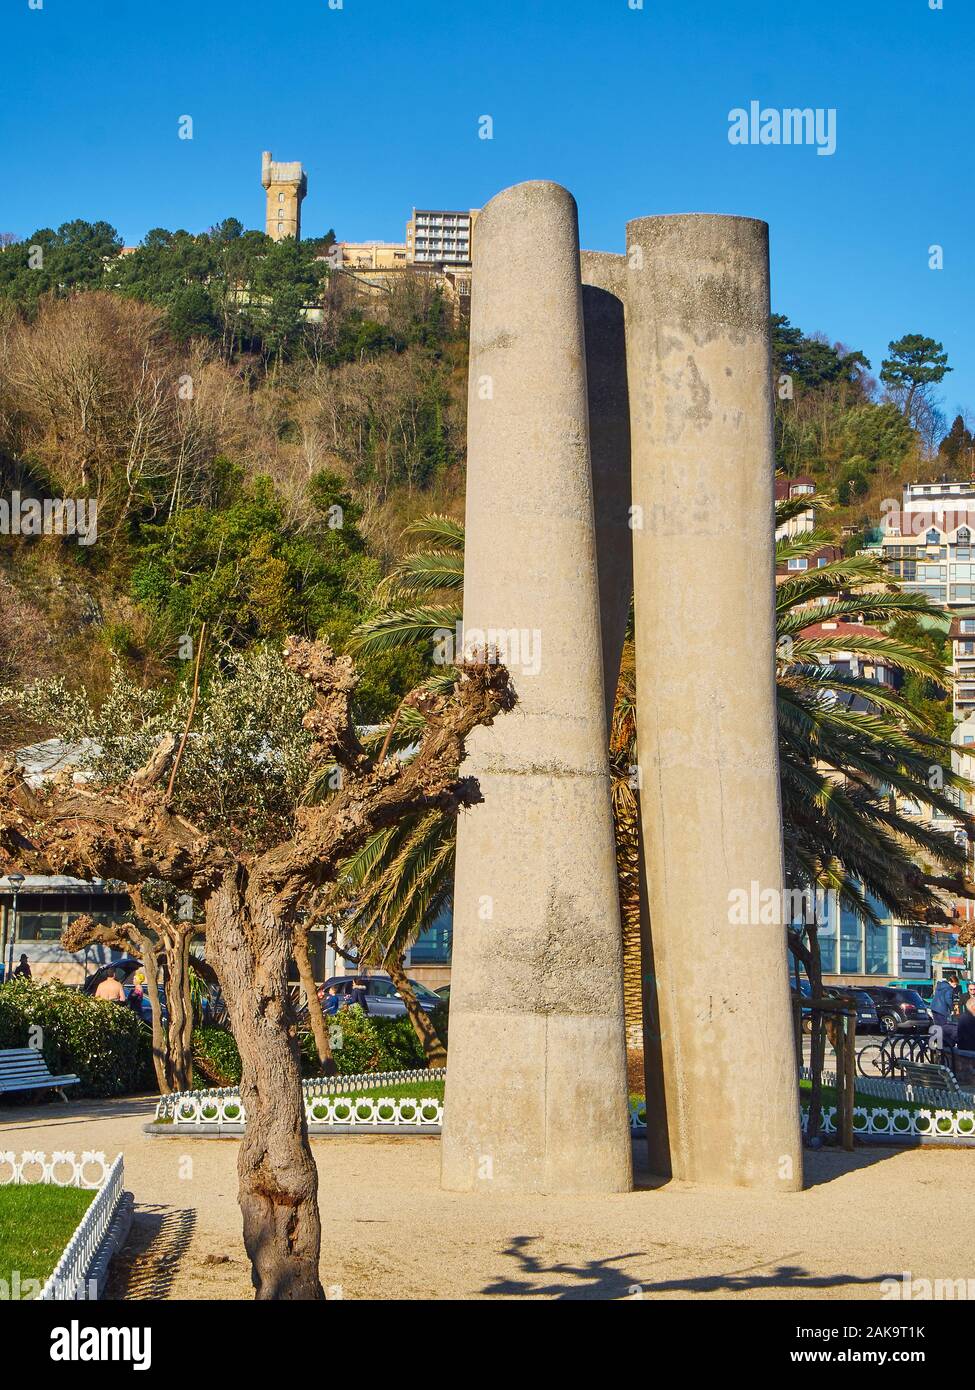 La statua di Zeharki di Jose Ramon Anda con la torre Igueldo sullo sfondo, al giorno di sole. San Sebastian, Paesi Baschi, Guipuzcoa. Spagna. Foto Stock